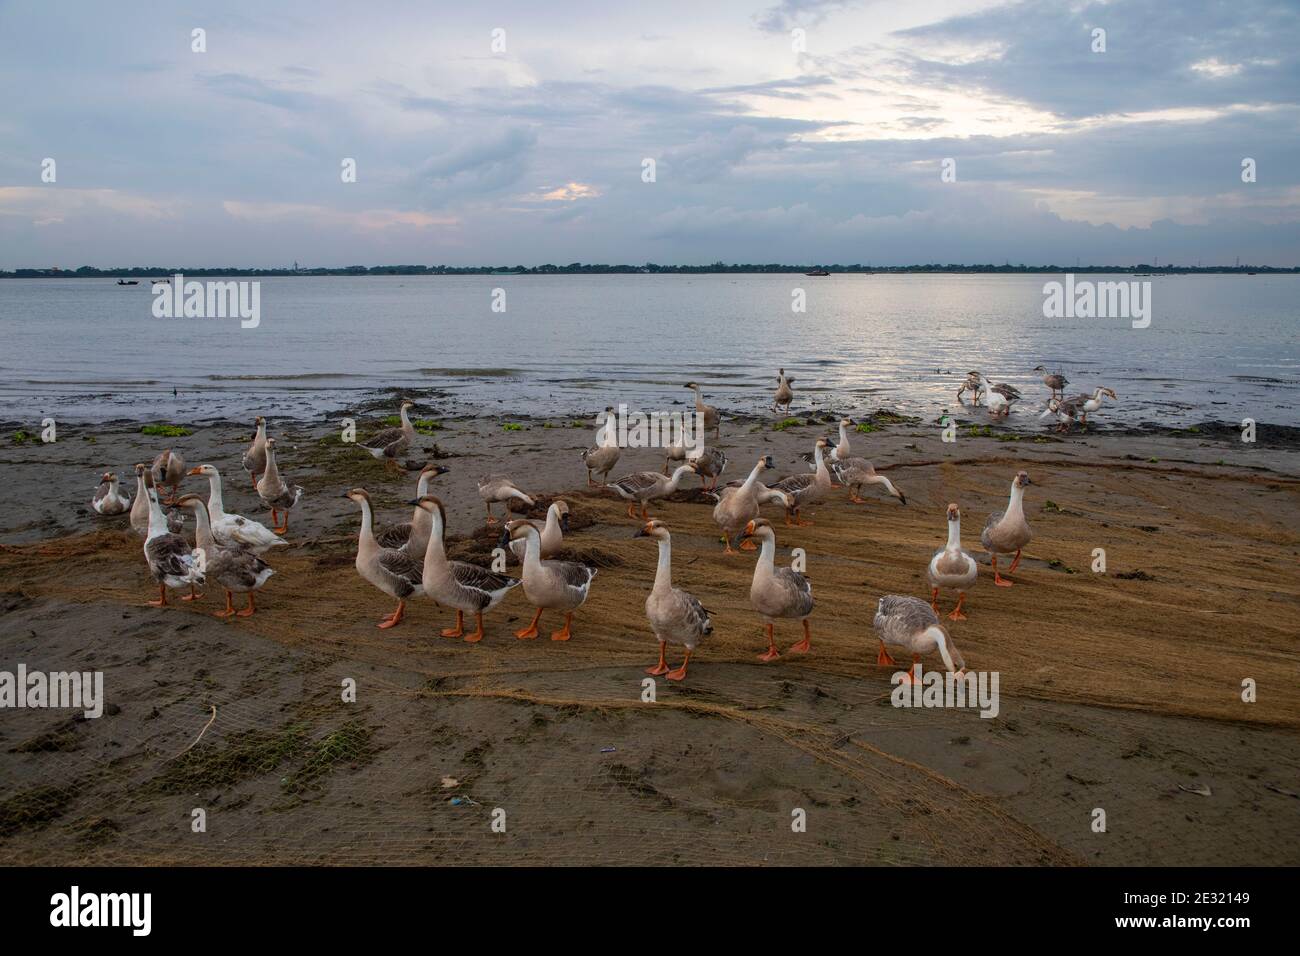 Un troupeau de cygnes sur la rive du fleuve Meghna, au Bangladesh. Banque D'Images